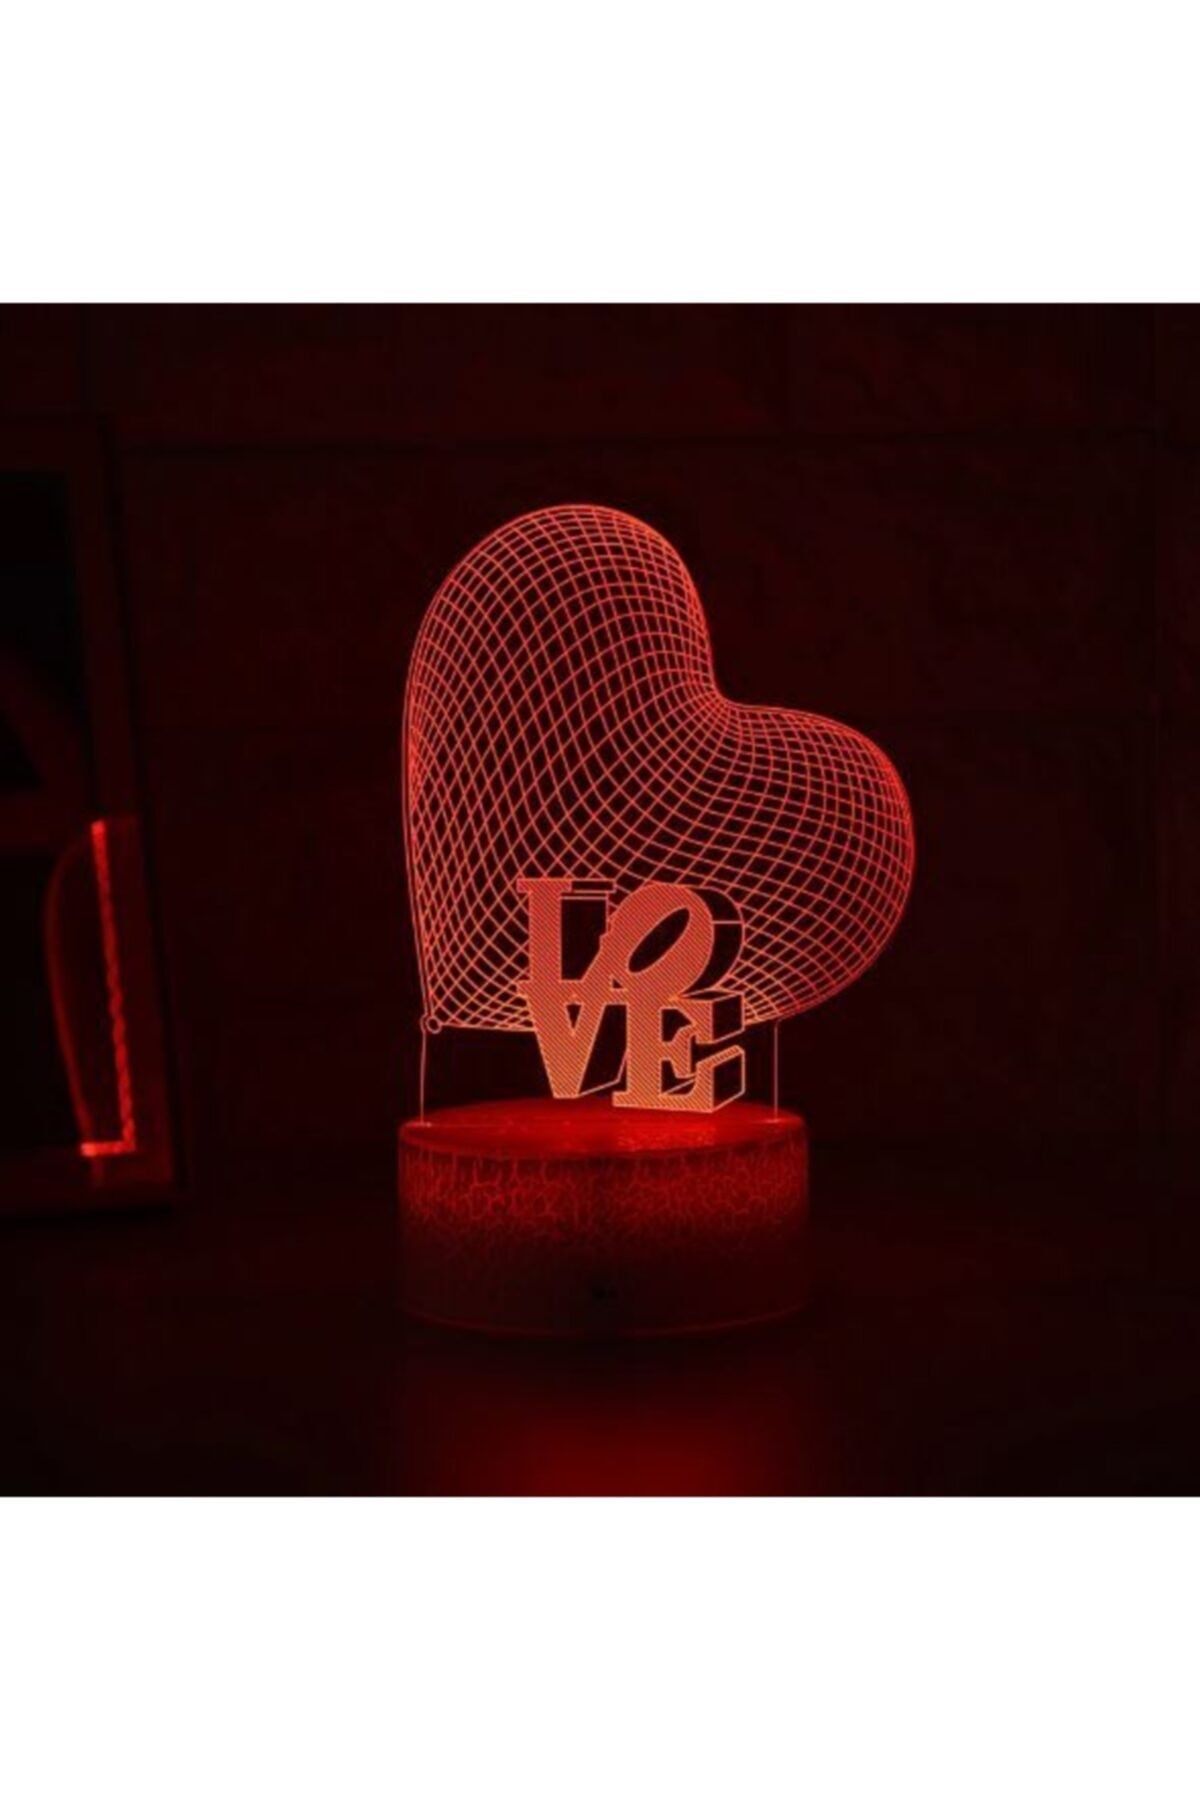 Kalp Üzeri Love Yazılı 3d Lamba Usb Ve Pilli 7 Renk Değiştiren Led Işık